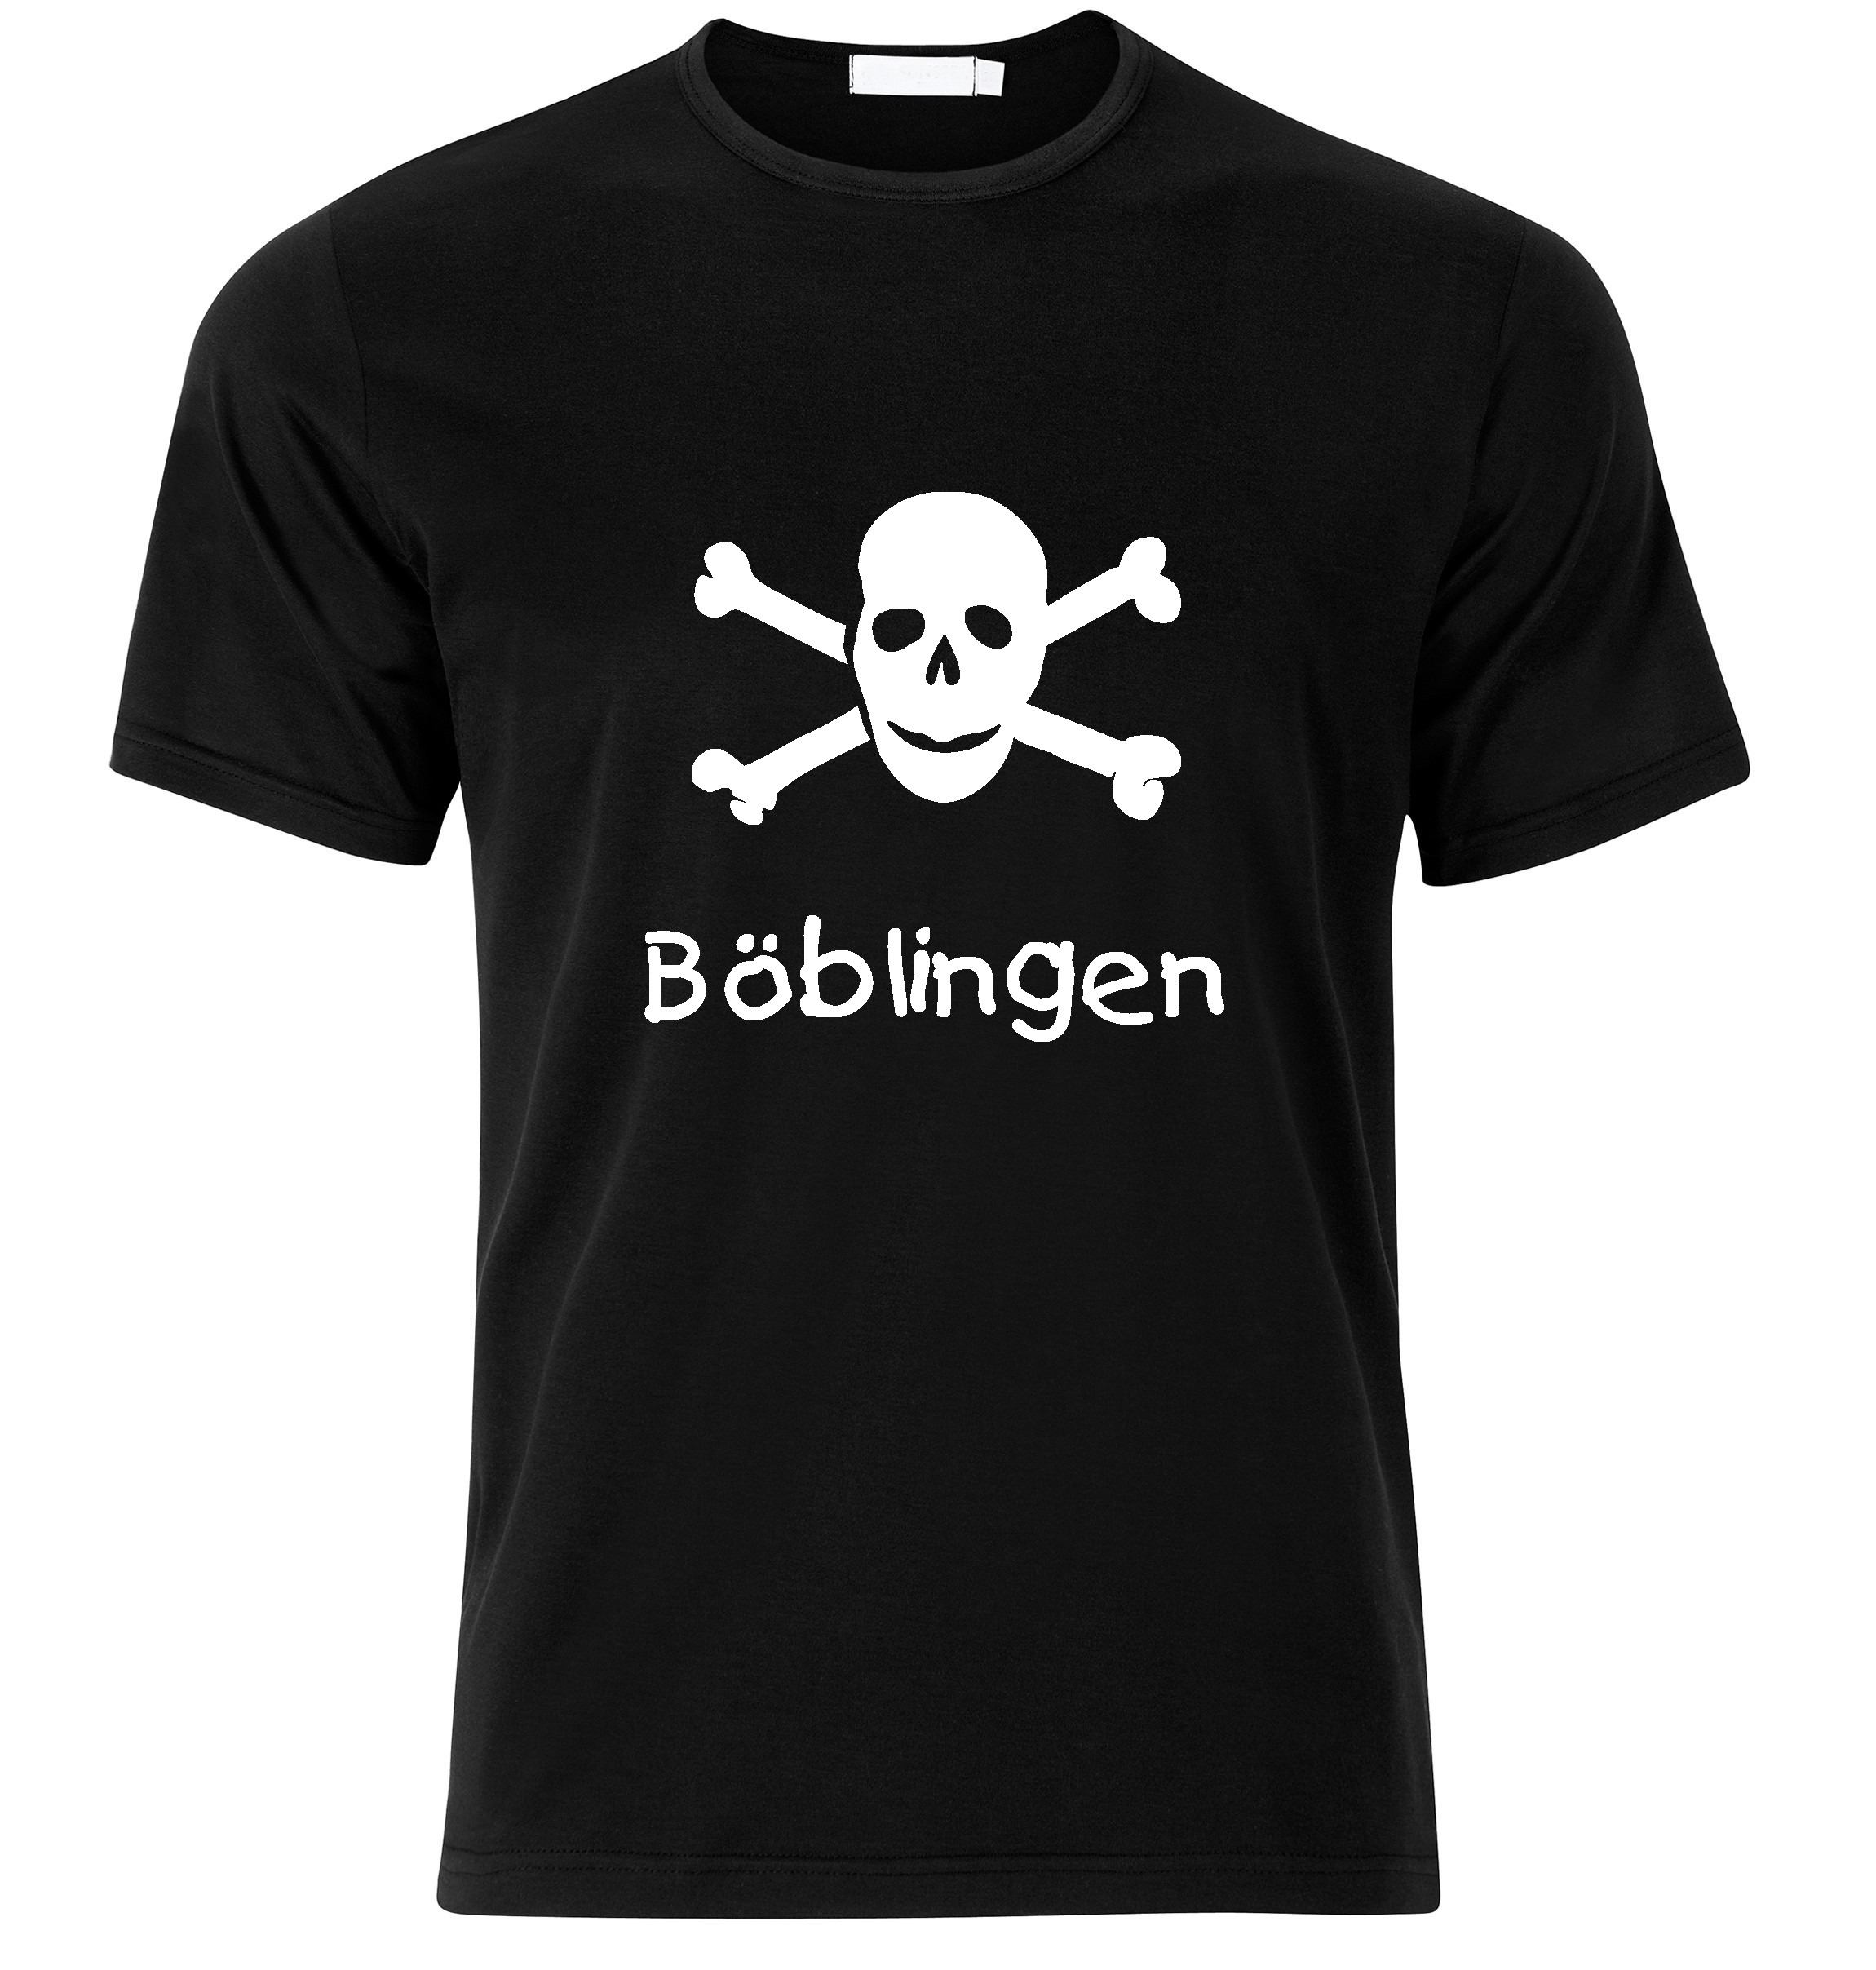 T-Shirt Böblingen Jolly Roger, Totenkopf